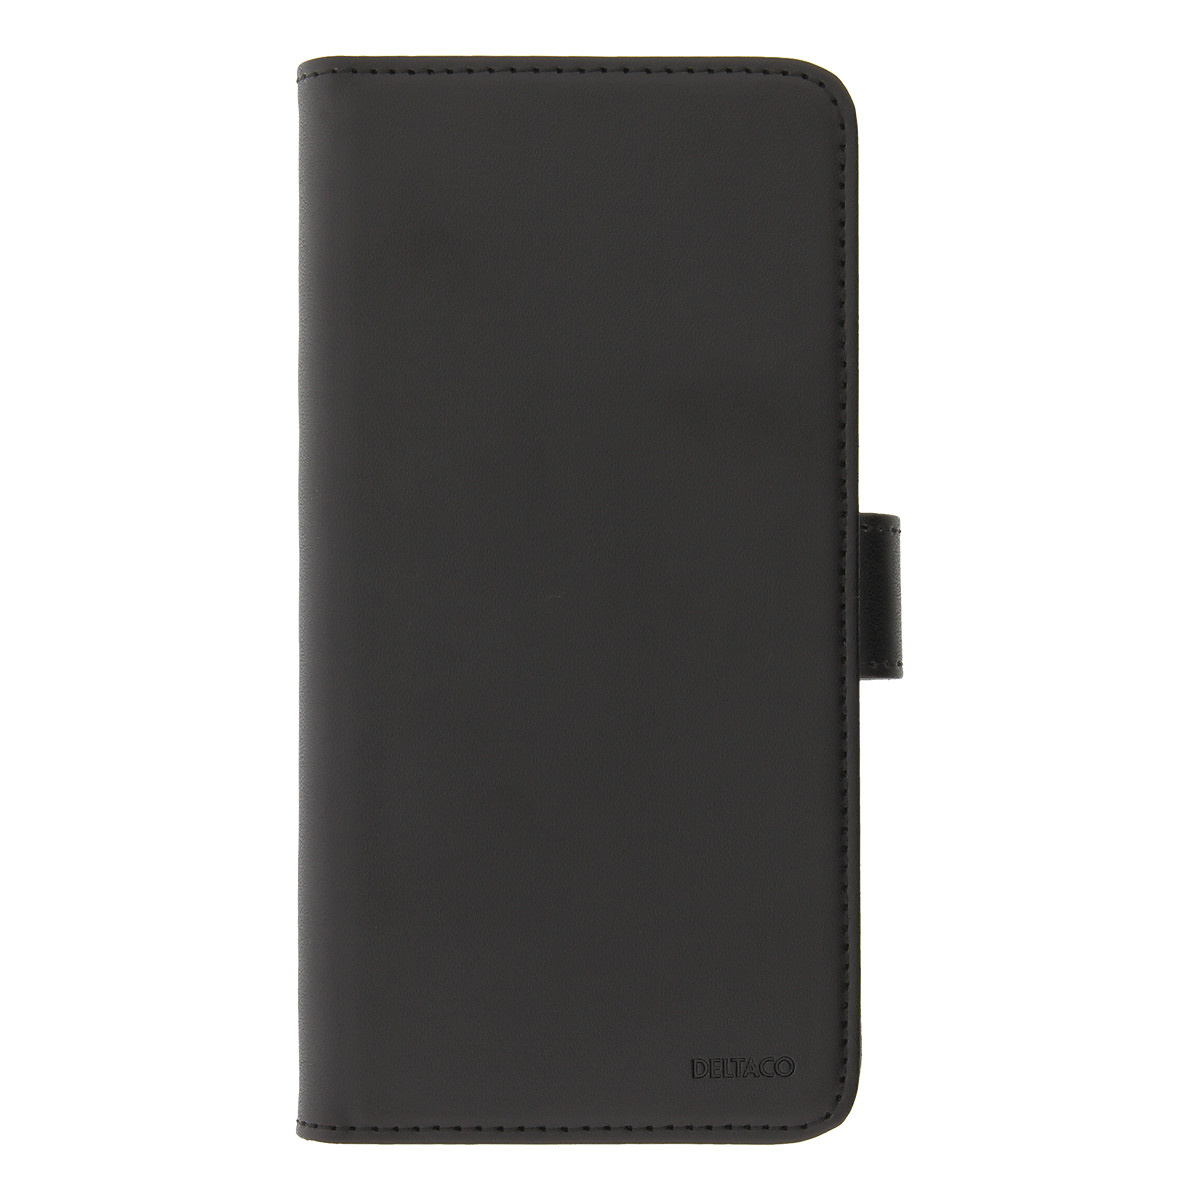 DELTACO plånboksfodral med löstagbar baksida till iPhone 11 Pro Max